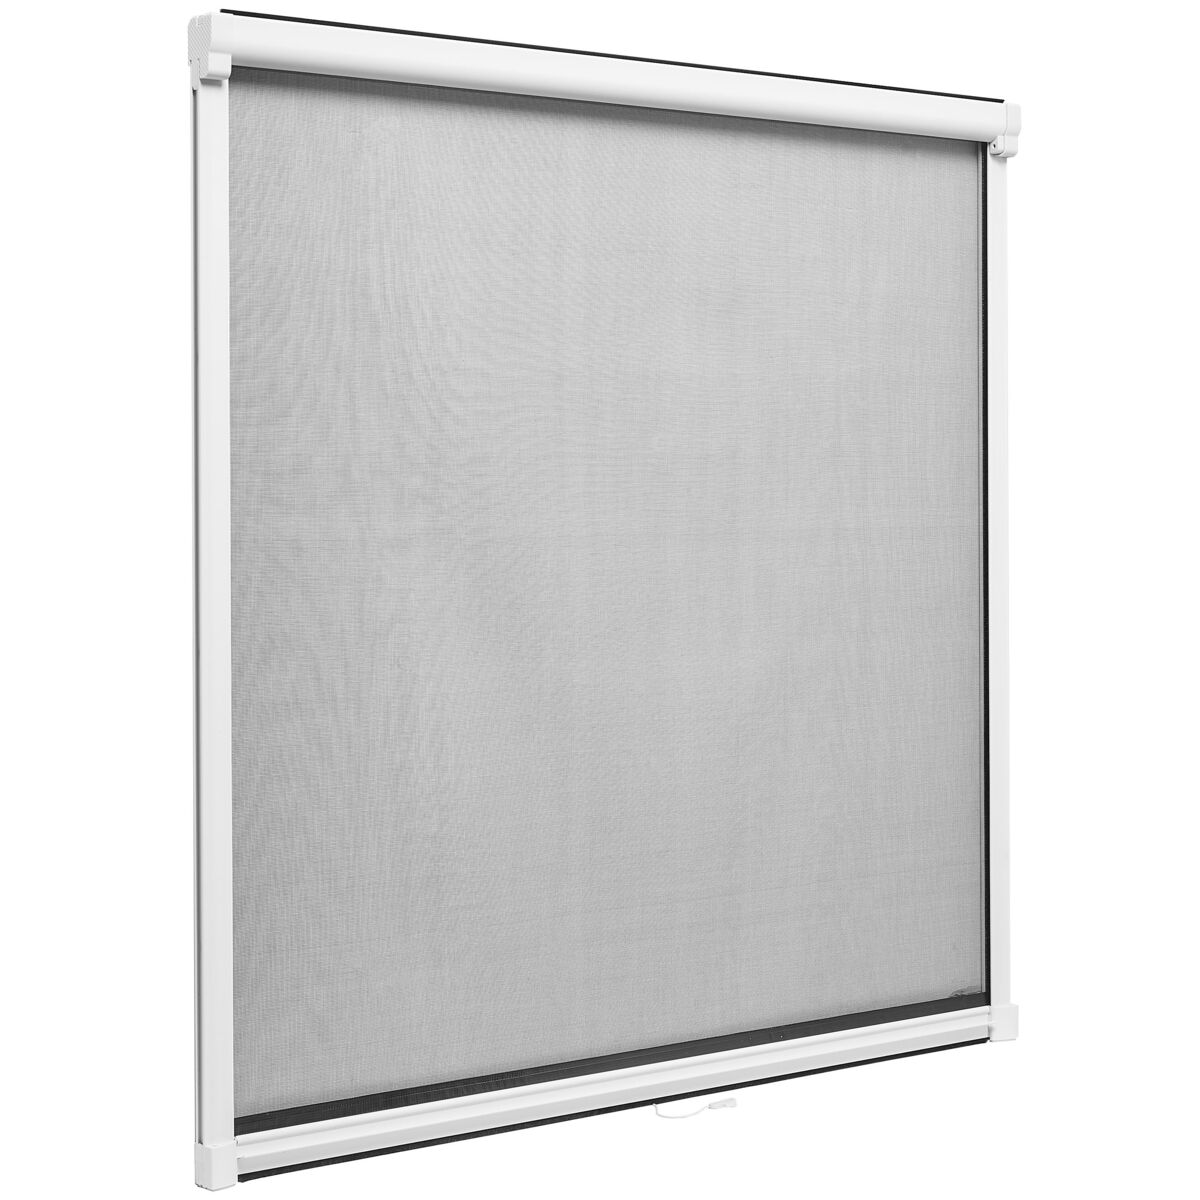 Moskitiera na okno 160x160 Biało/Czarna z możliwością przesuwania w pionie Artens